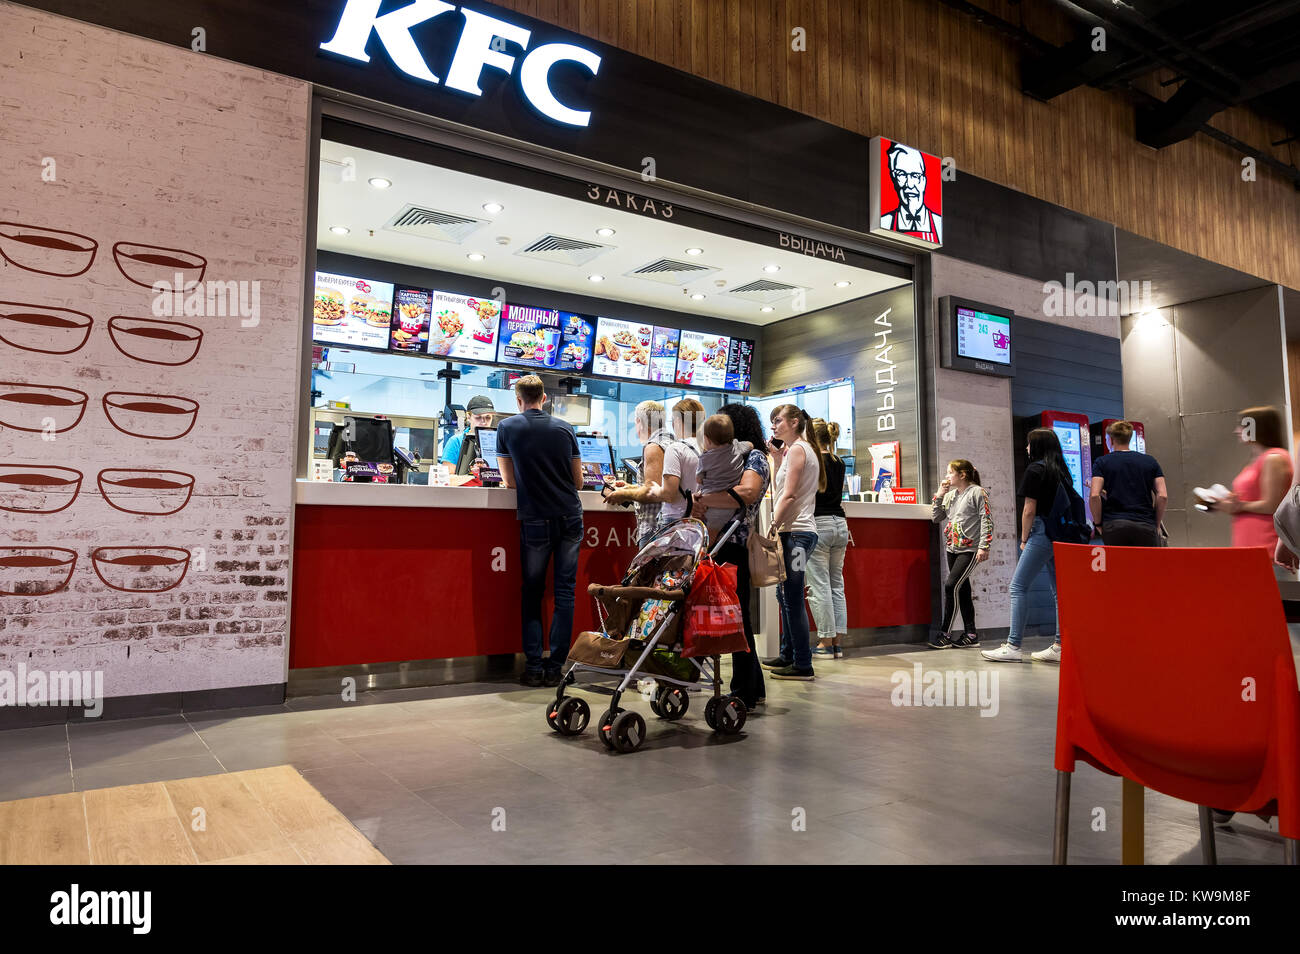 Samara, Russland - 16. September 2017: KFC Fastfood Restaurant in einem Einkaufszentrum Gudok. KFC ist eine weltweite Kette von Fast Food Restaurants Stockfoto